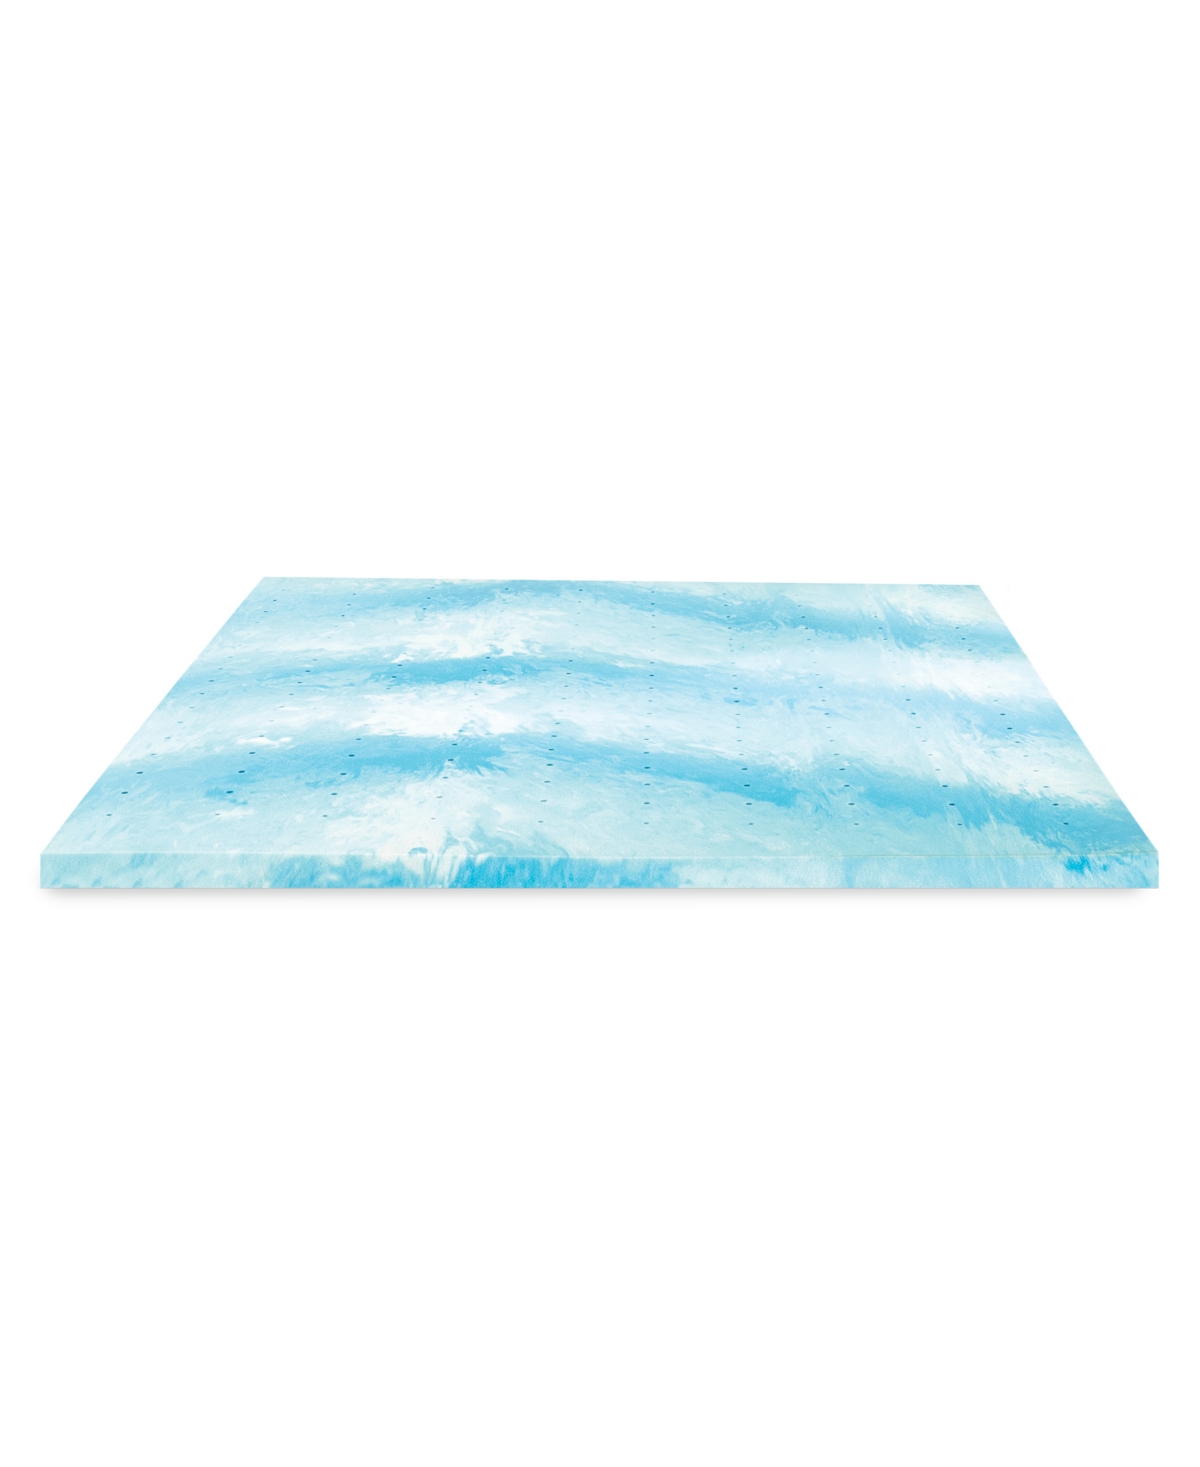 Shop Prosleep Cooling Gel Swirl 3" Memory Foam Mattress Topper, King In White,blue